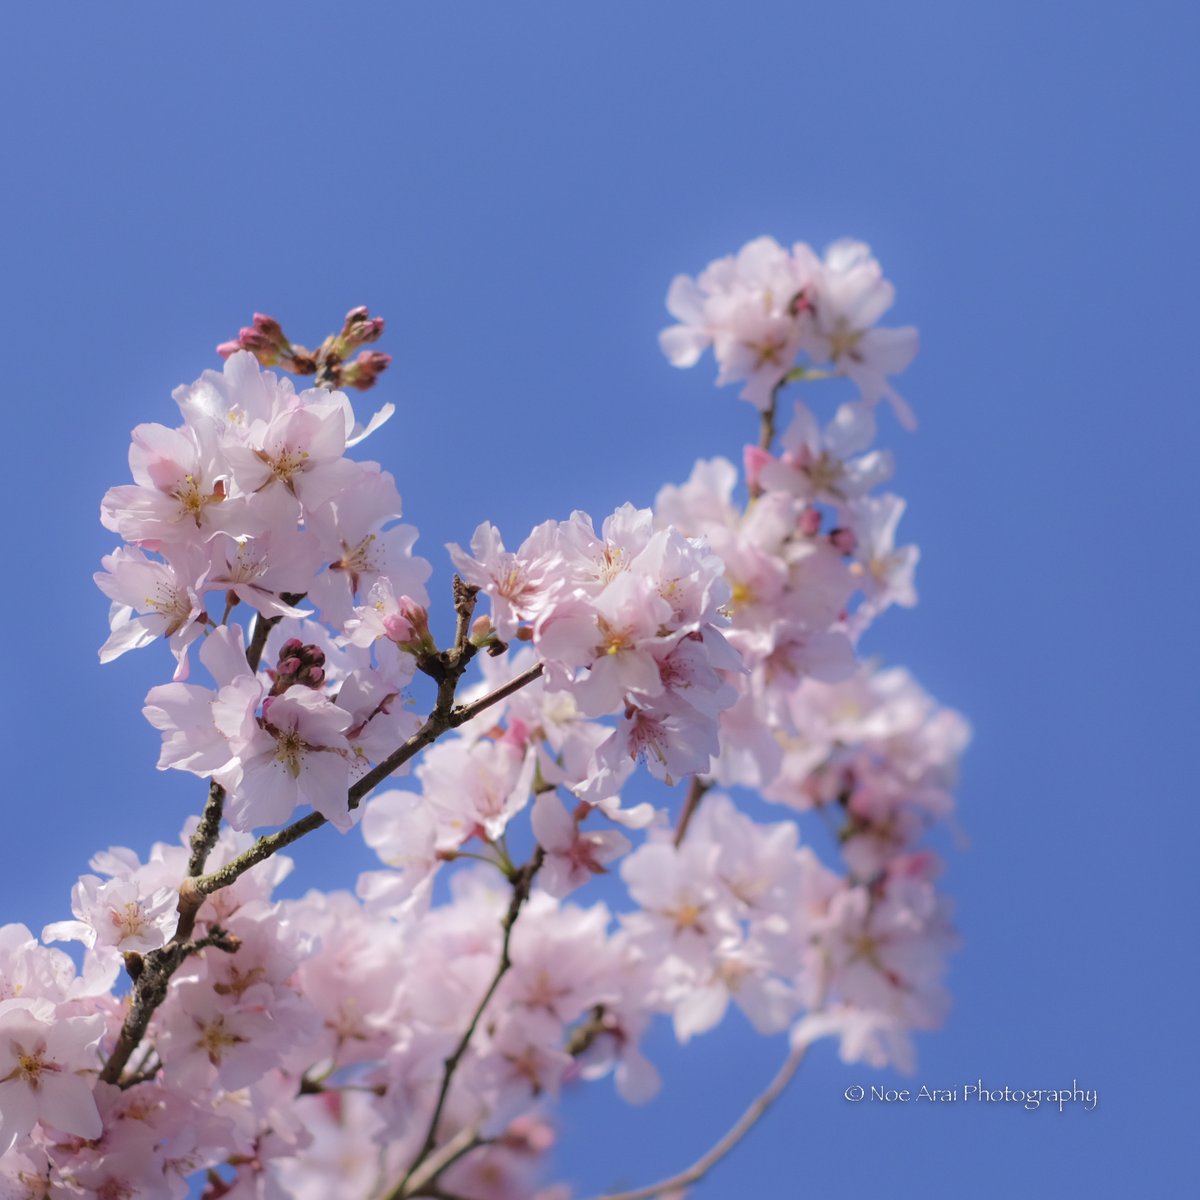 小湊鉄道を撮りに行った日にみつけた早咲きの桜です。
つぼみも花びらも可愛いですね。❛ ֊ ❛
#千葉県 #市原市 #tokyocameraclub #花 #桜 #今日もX日和 #xt2 #xf35 #life_with_camera #FUJIFILM #beautiful
#Japan #photo_travelers #photo_shorttrip #cherryblossom #lovely #flower #spring #sweet